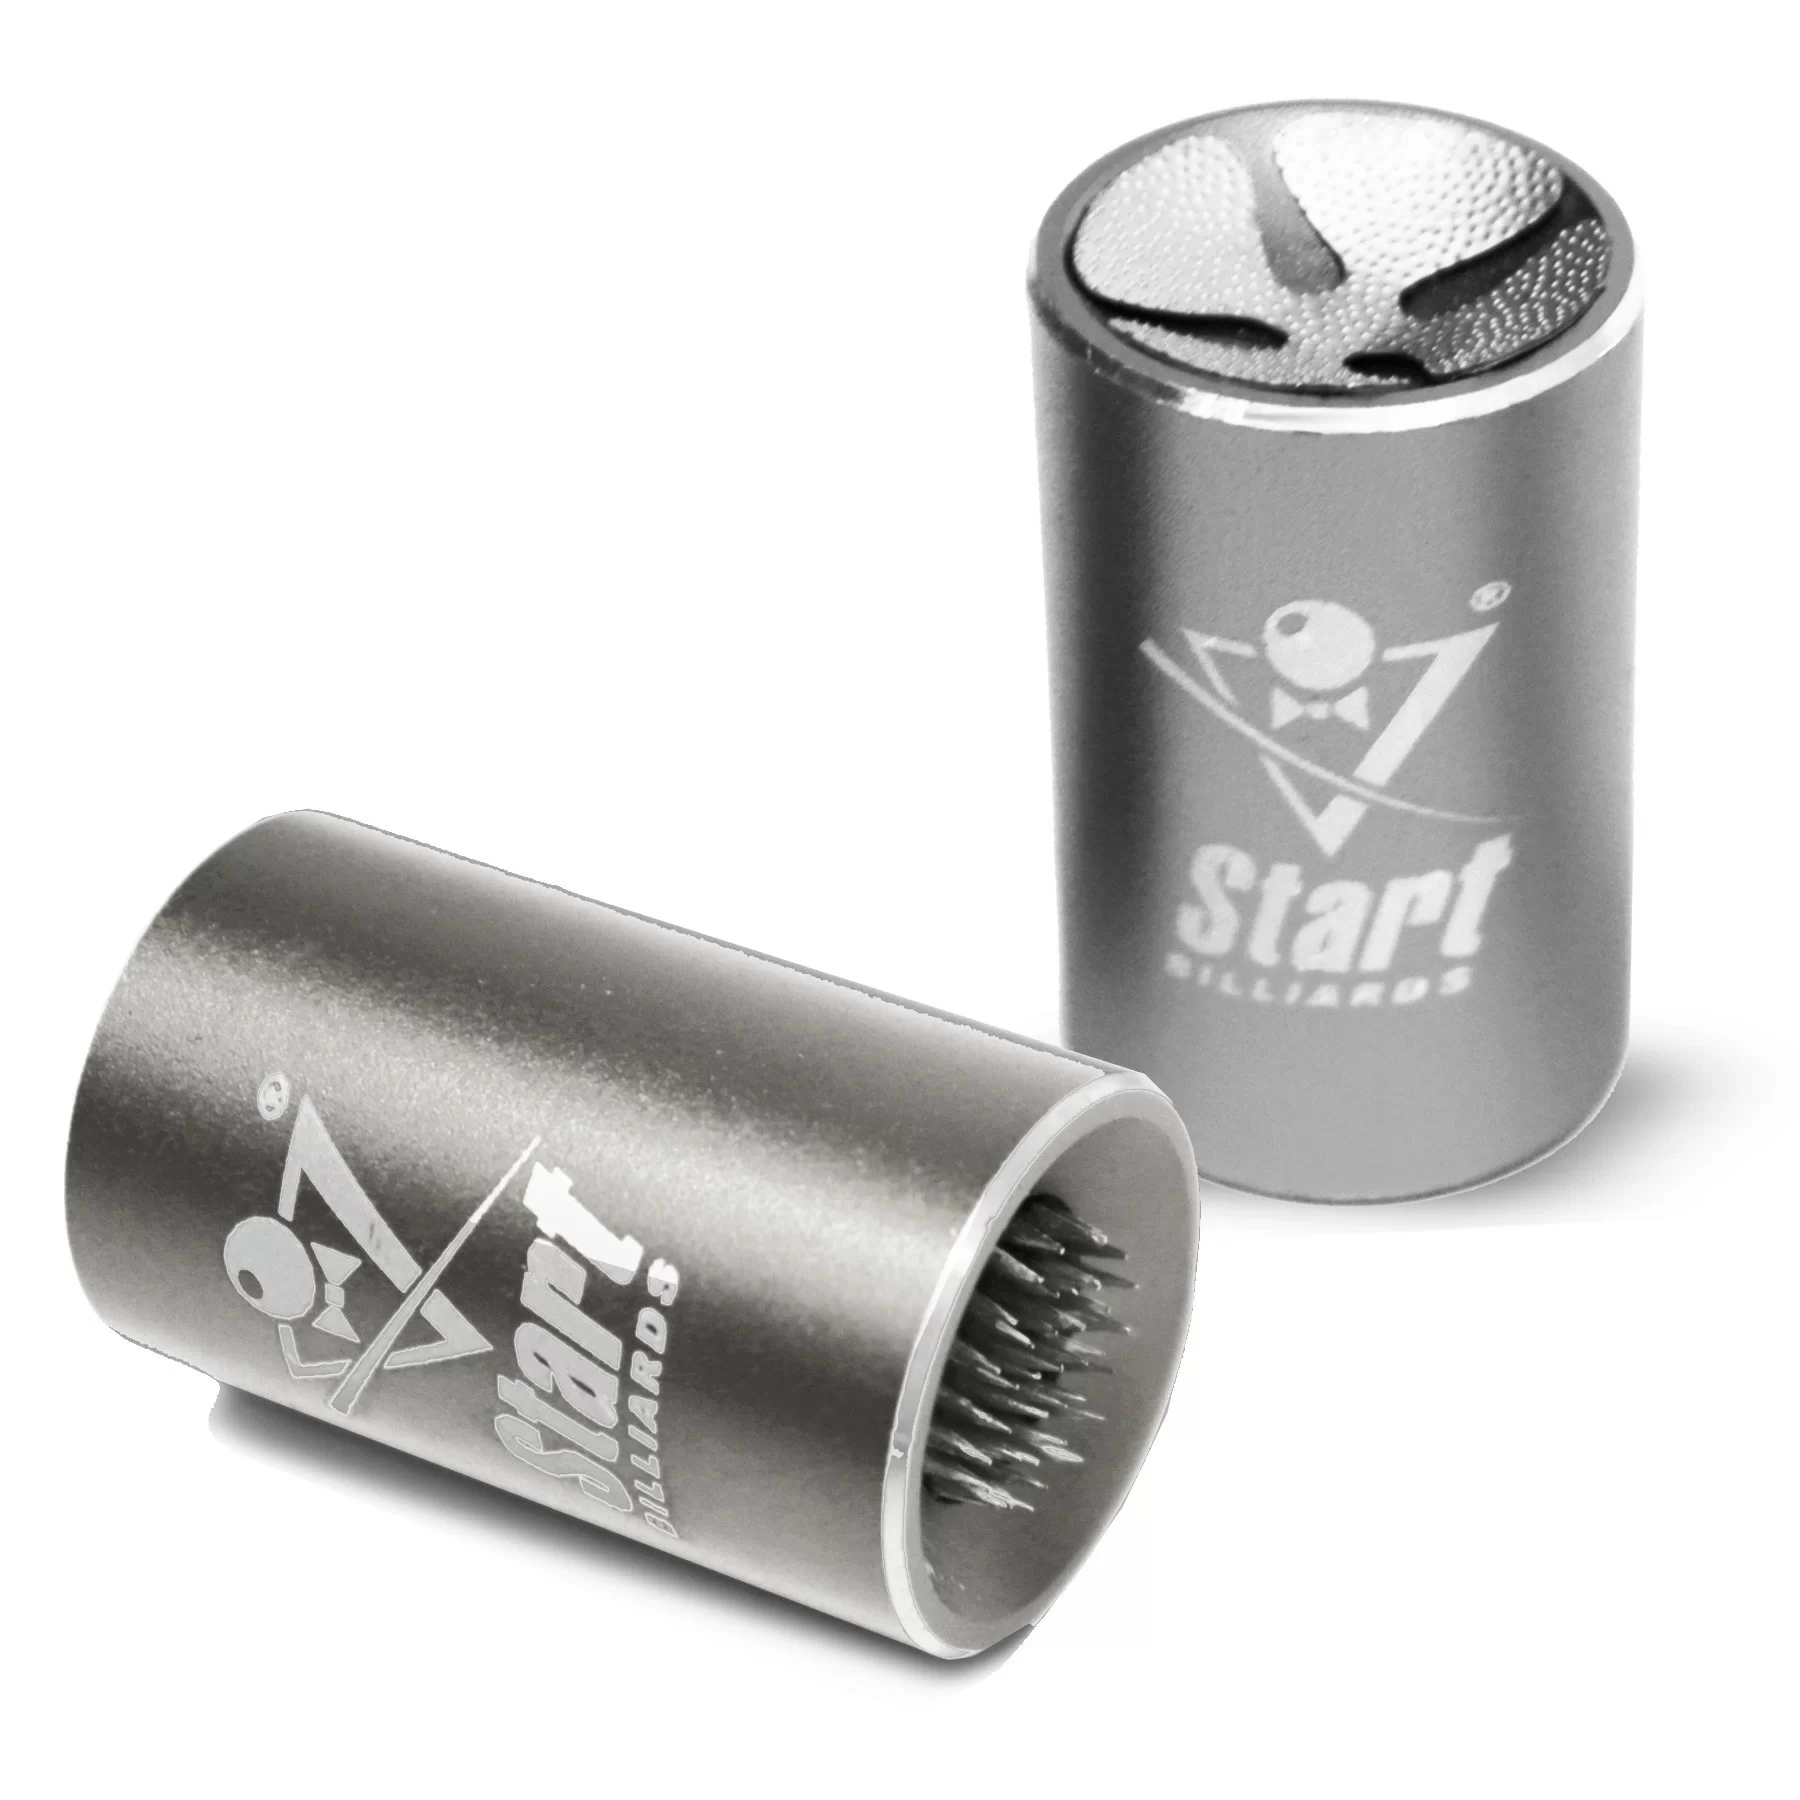 Реальное фото Инструмент Startbilliards Galaxy серебро для перфорации наклейки SB144 от магазина СпортСЕ